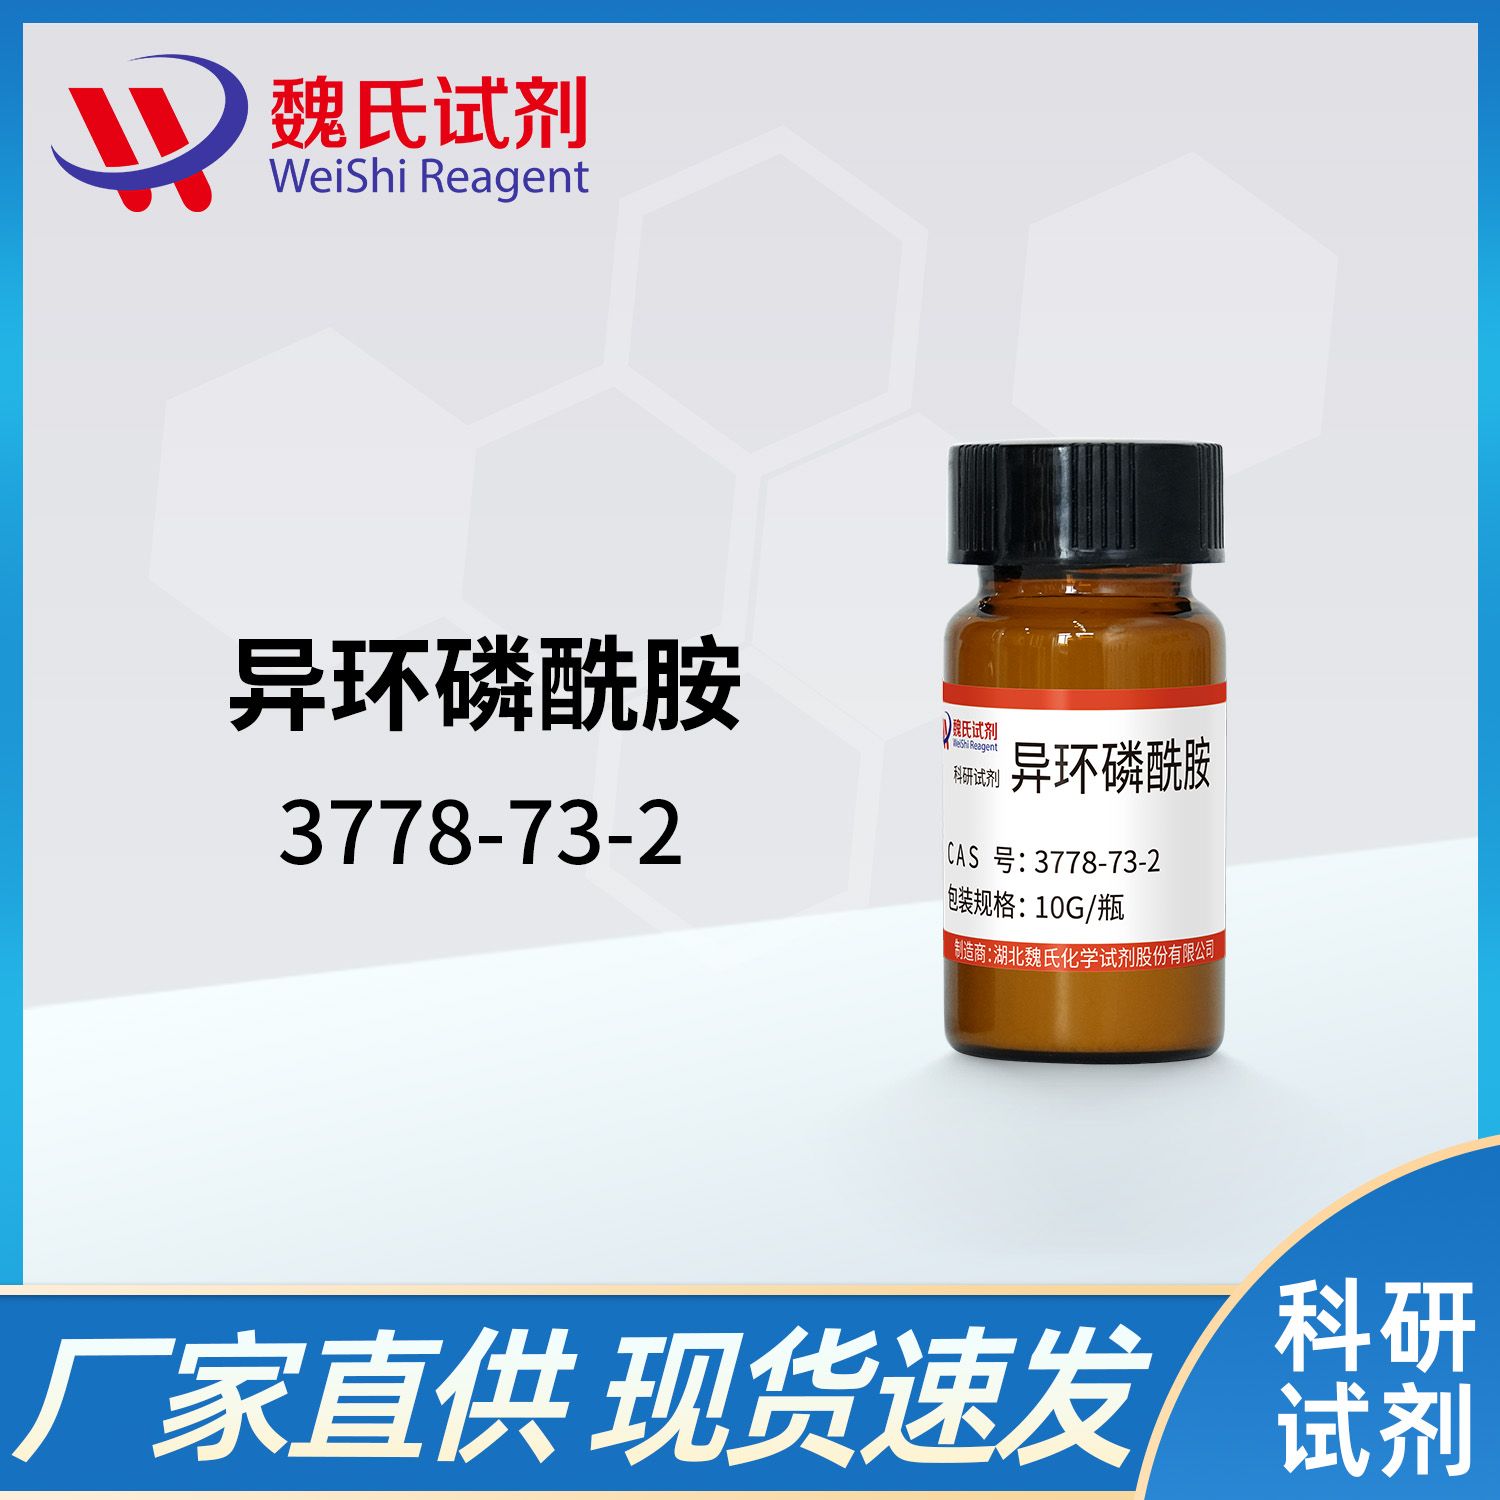 3778-73-2 /异环磷酰胺/Ifosfamide